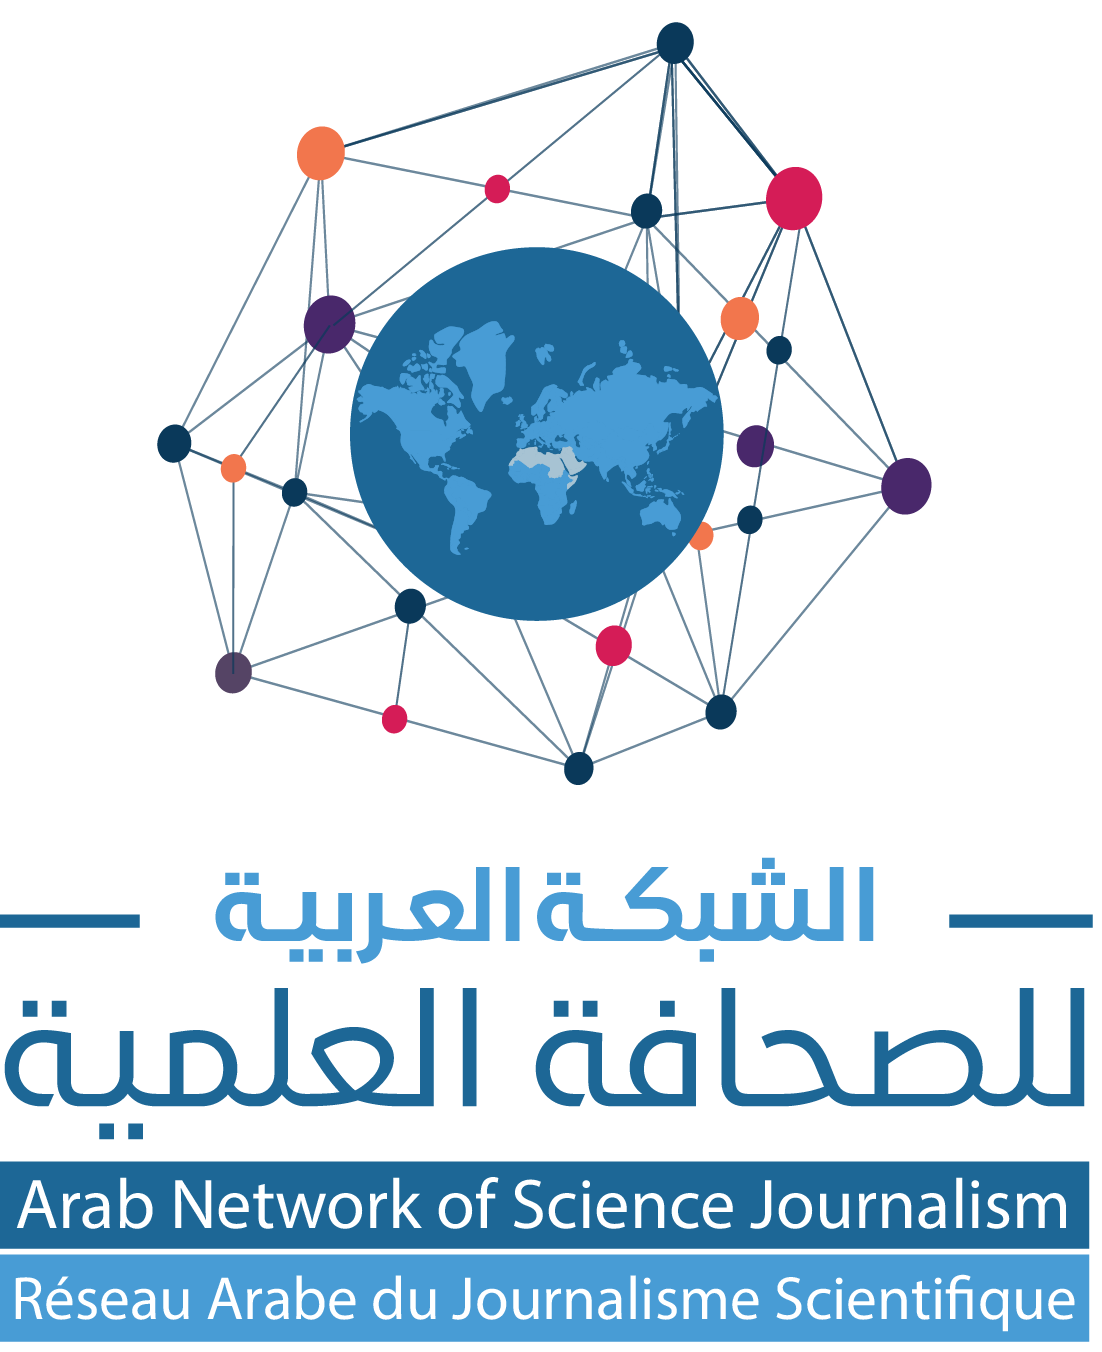 Arab Network of Science Journalism